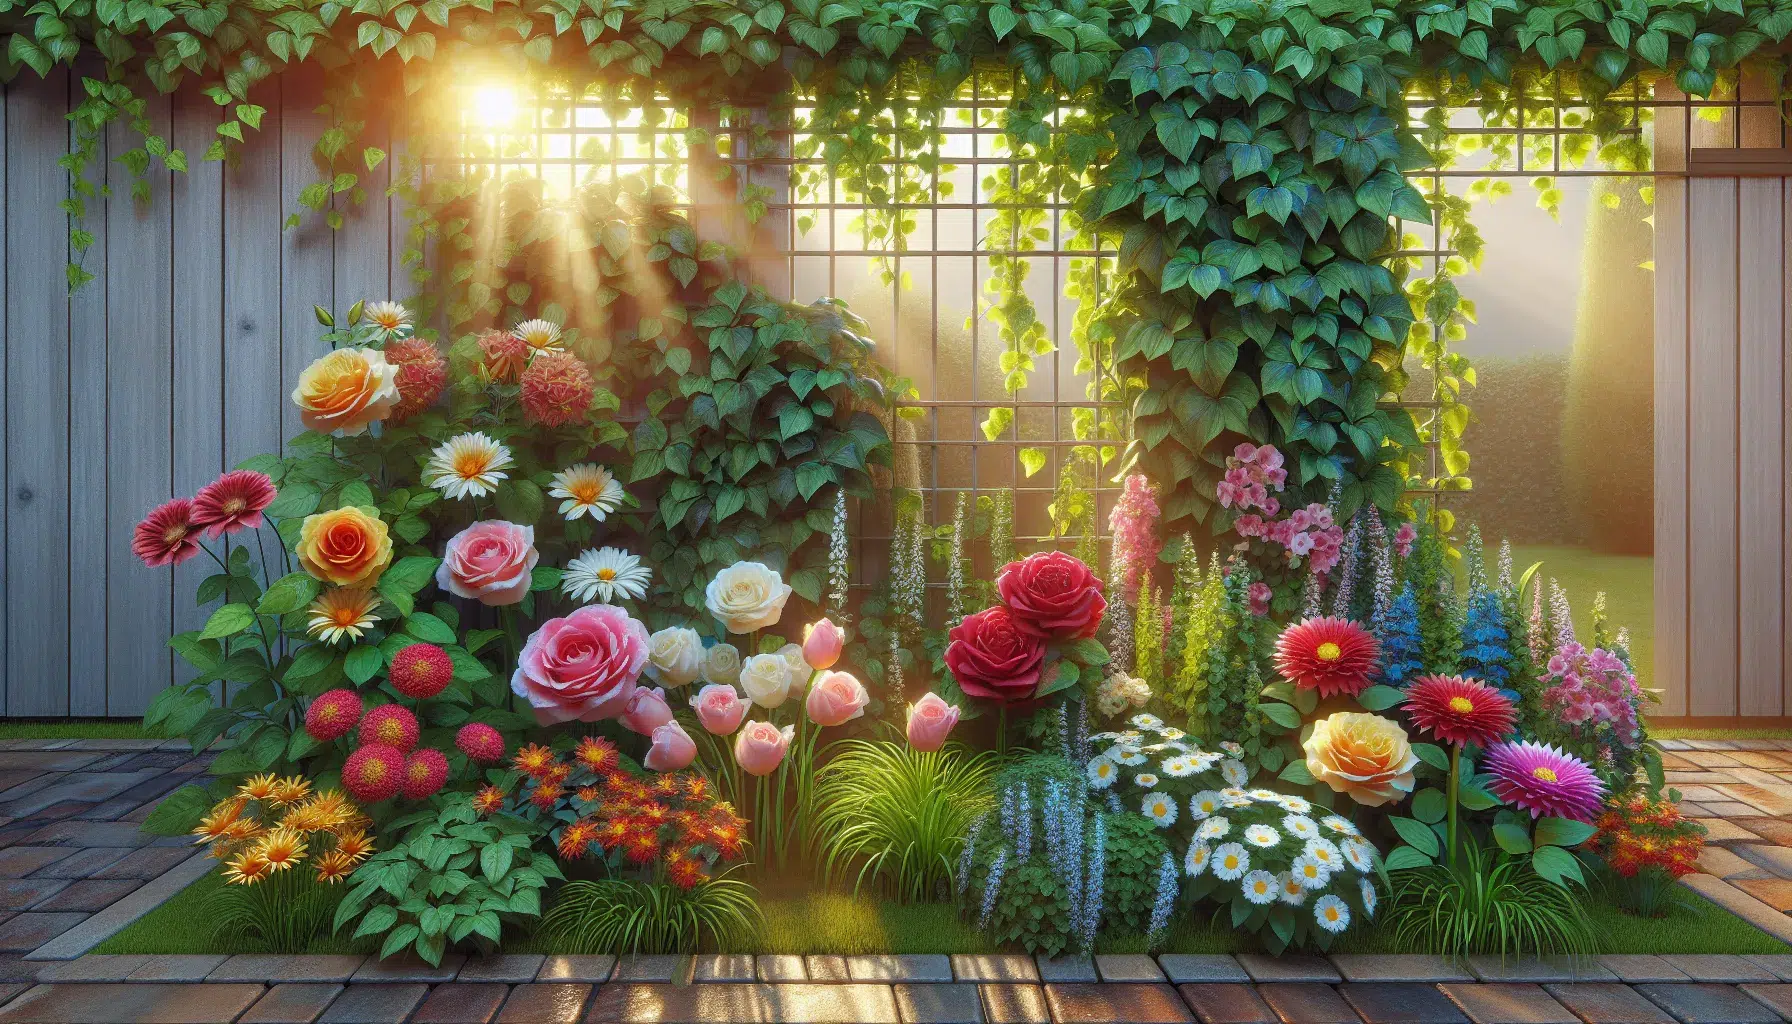 Imagen de diferentes plantas ornamentales coloridas y variadas en un jardín bien cuidado.